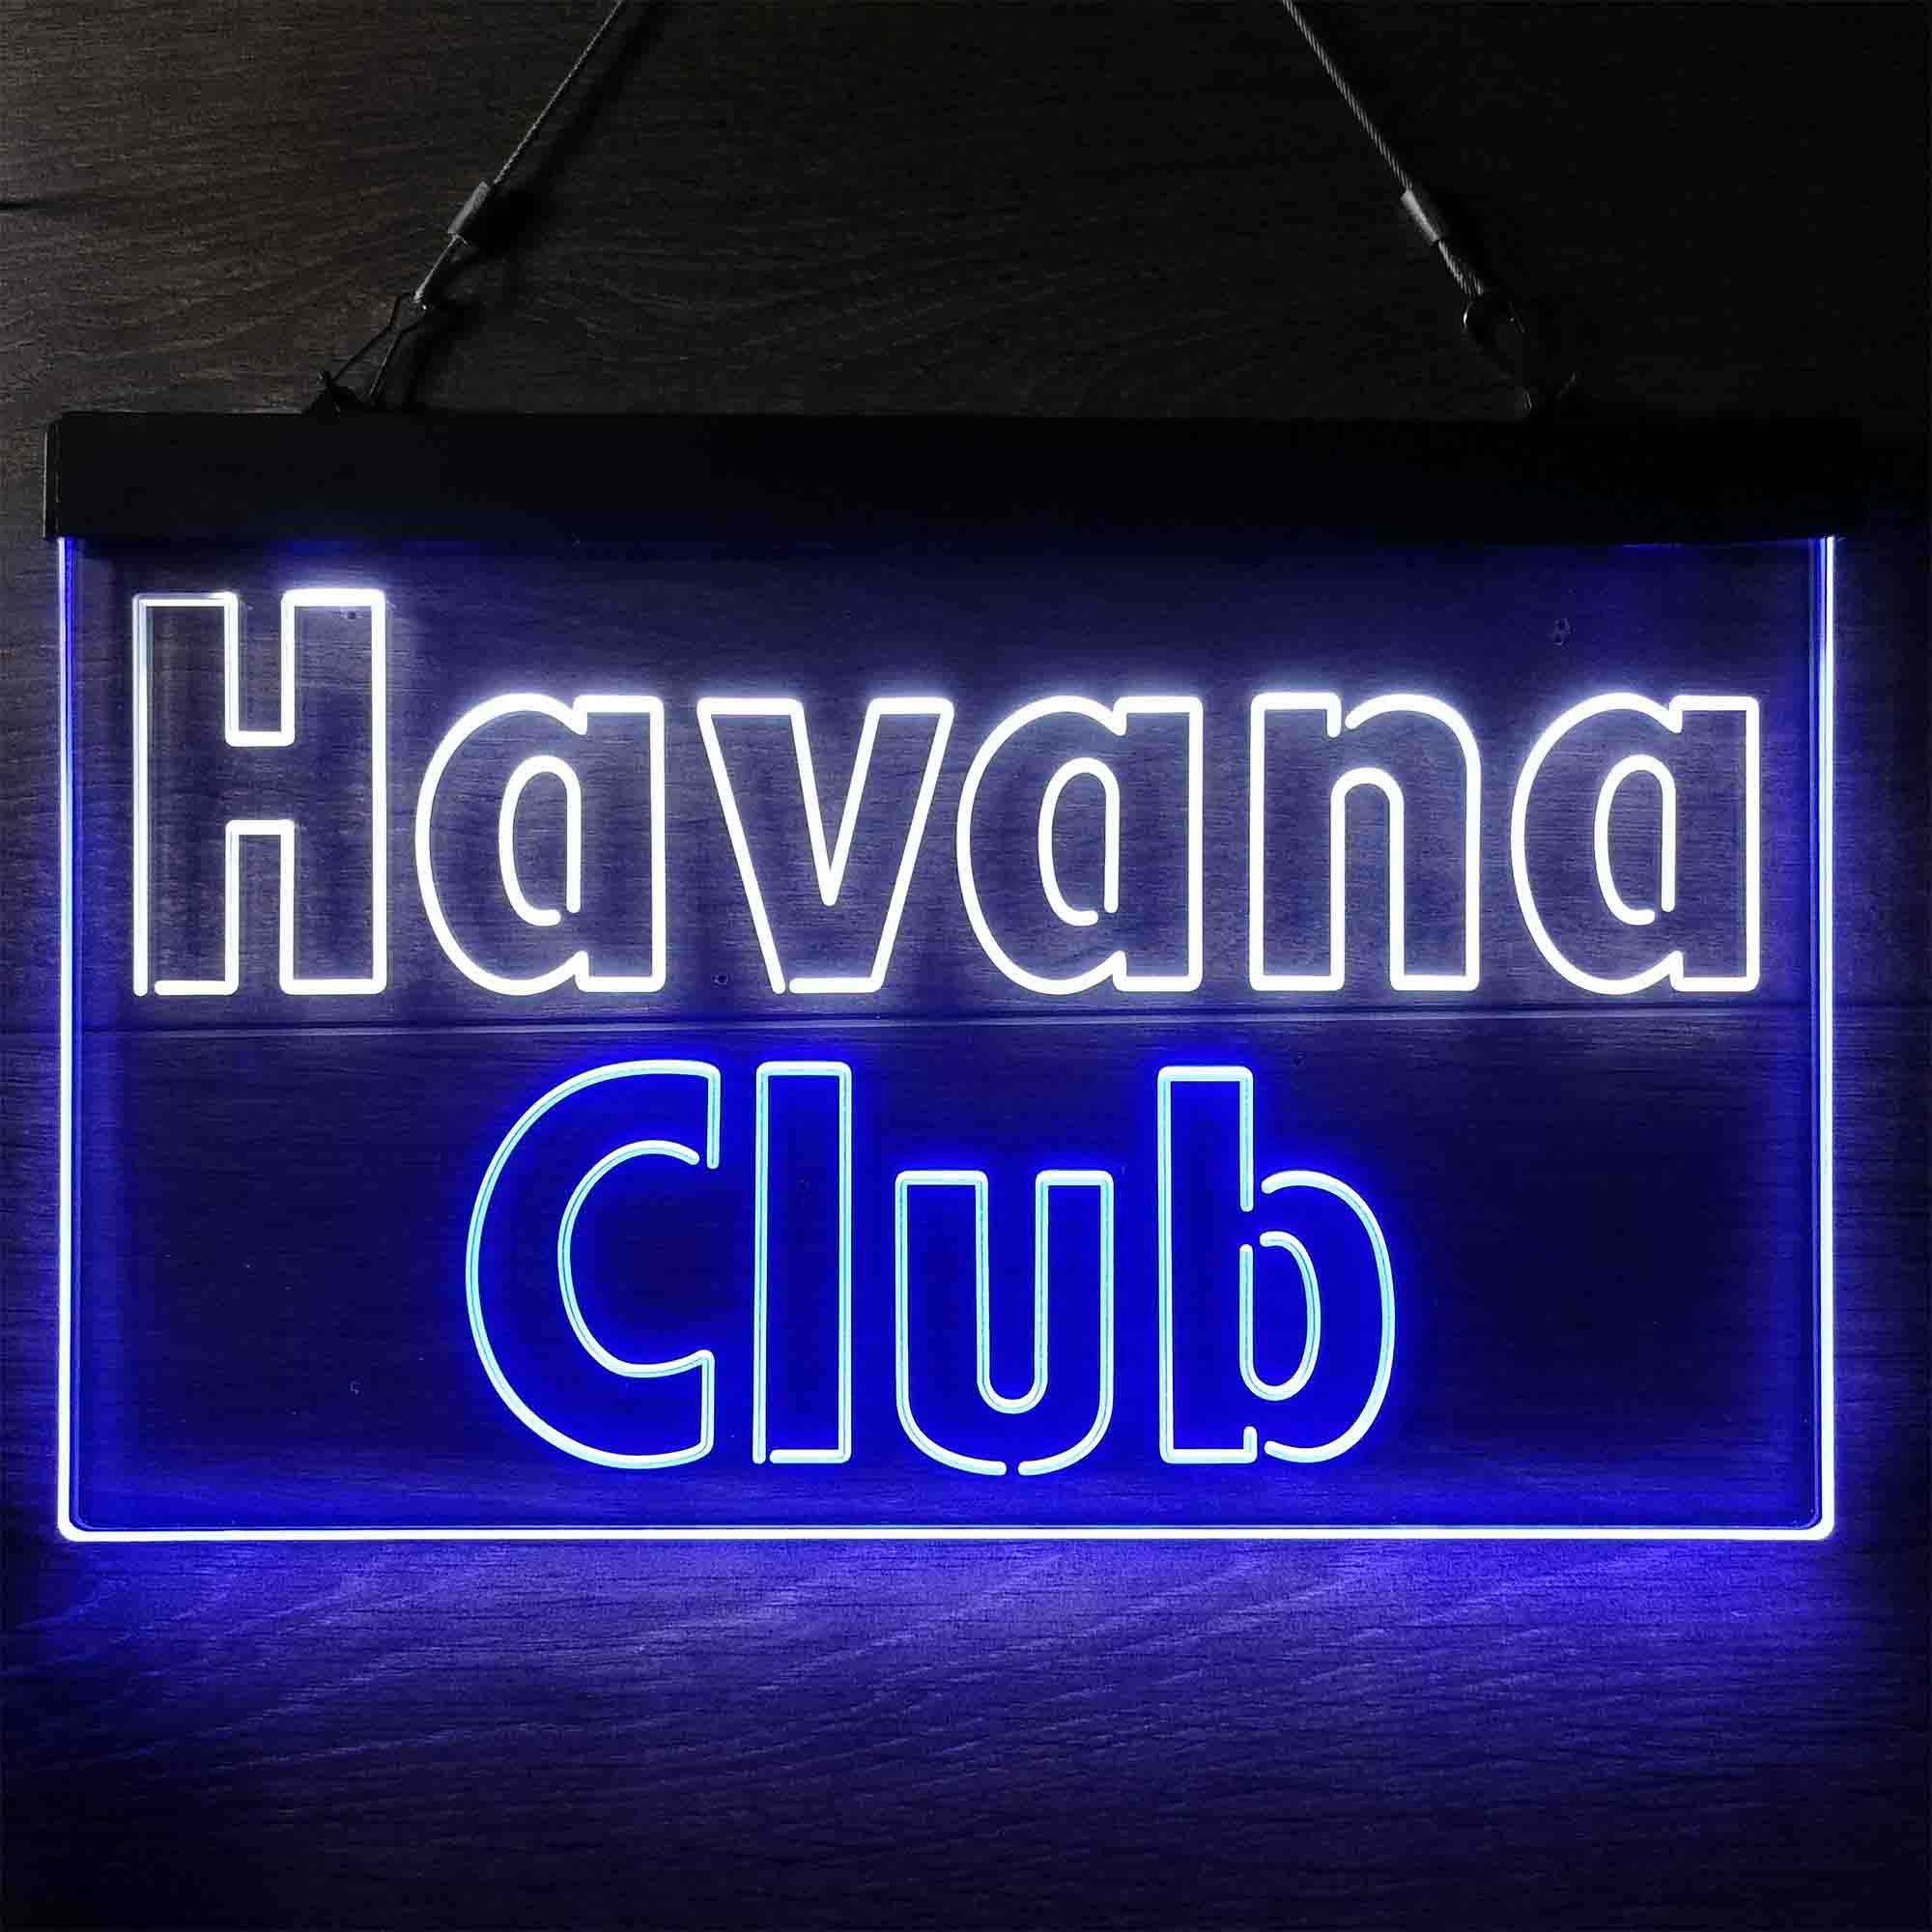 Leuchtschild Havann Club Emblem